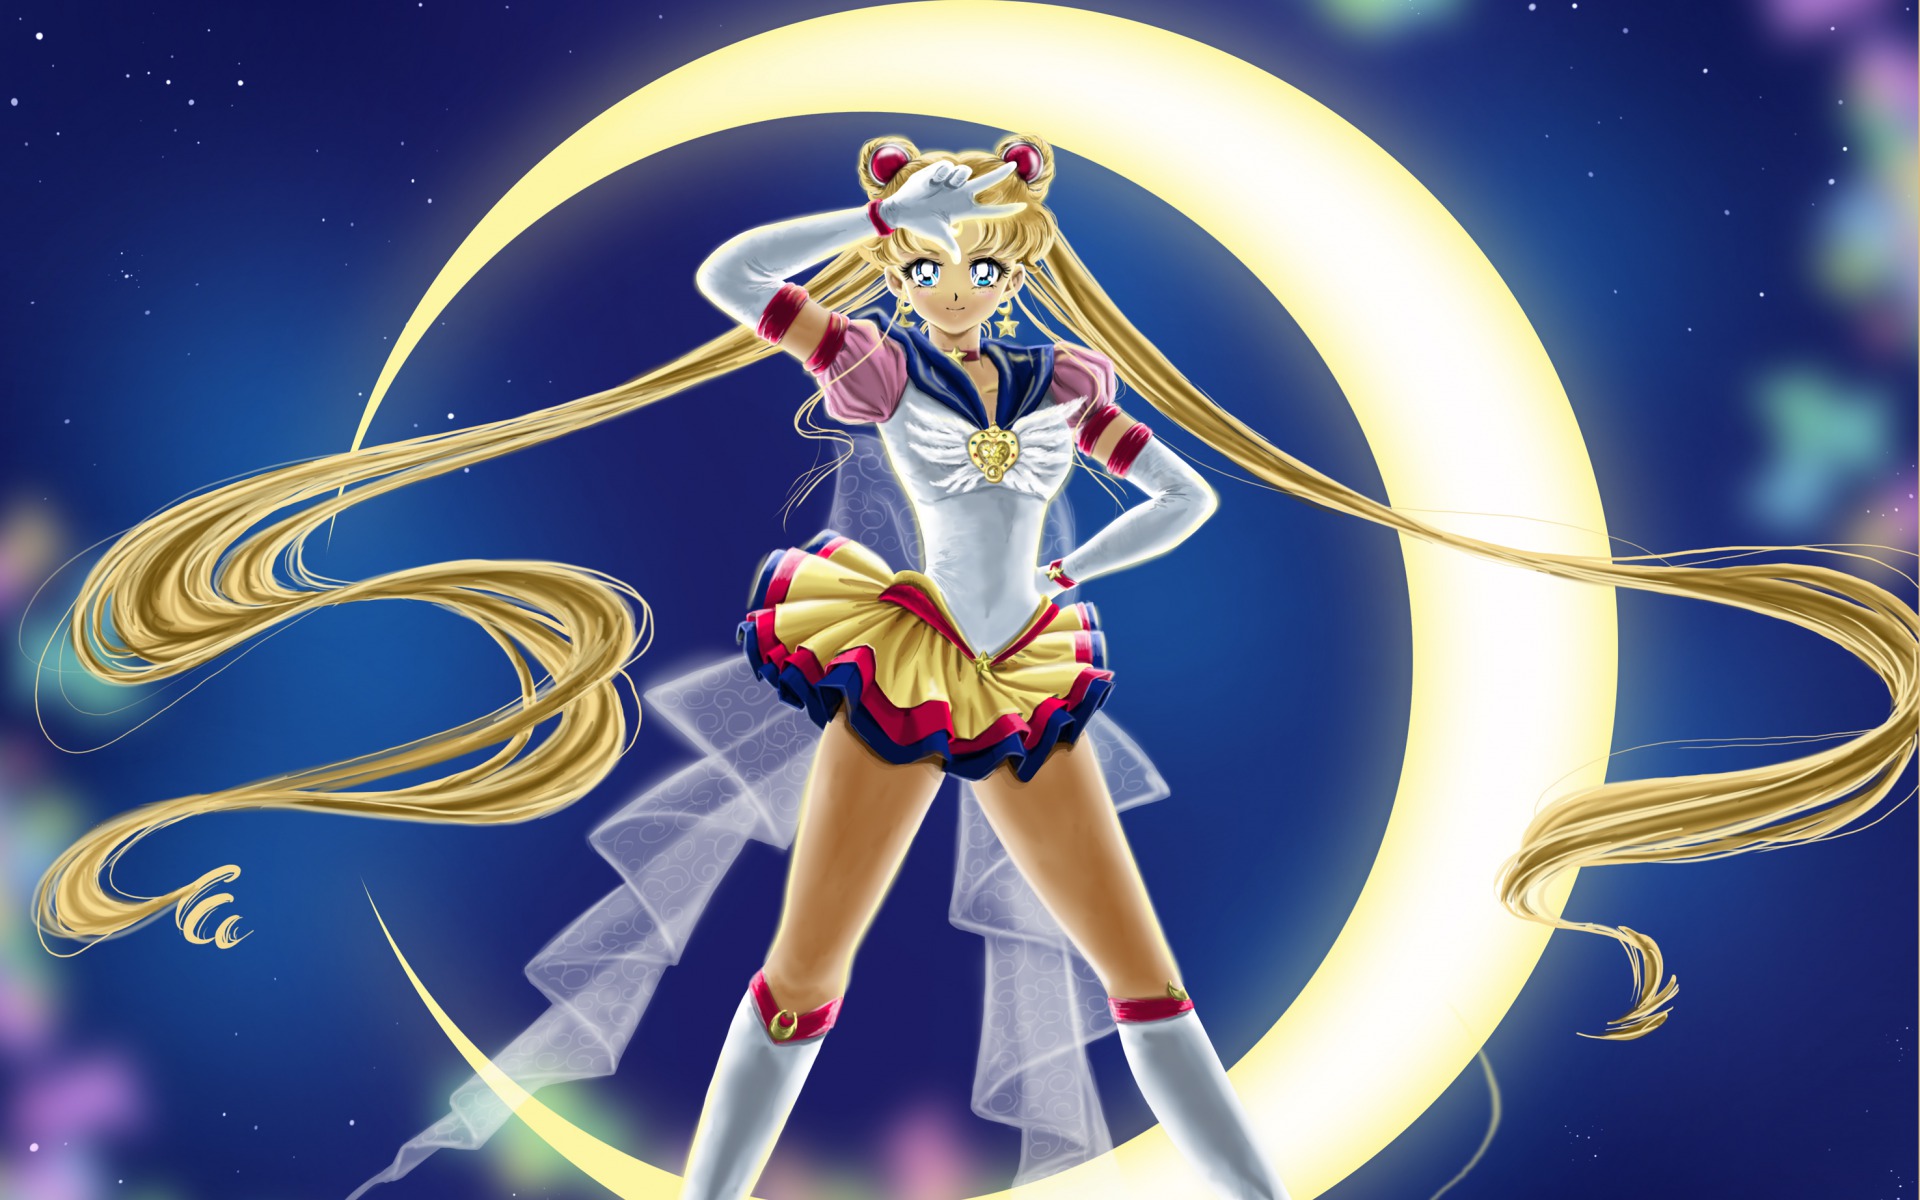 Sailor Moon Background Wallpaper | Wallusia.com